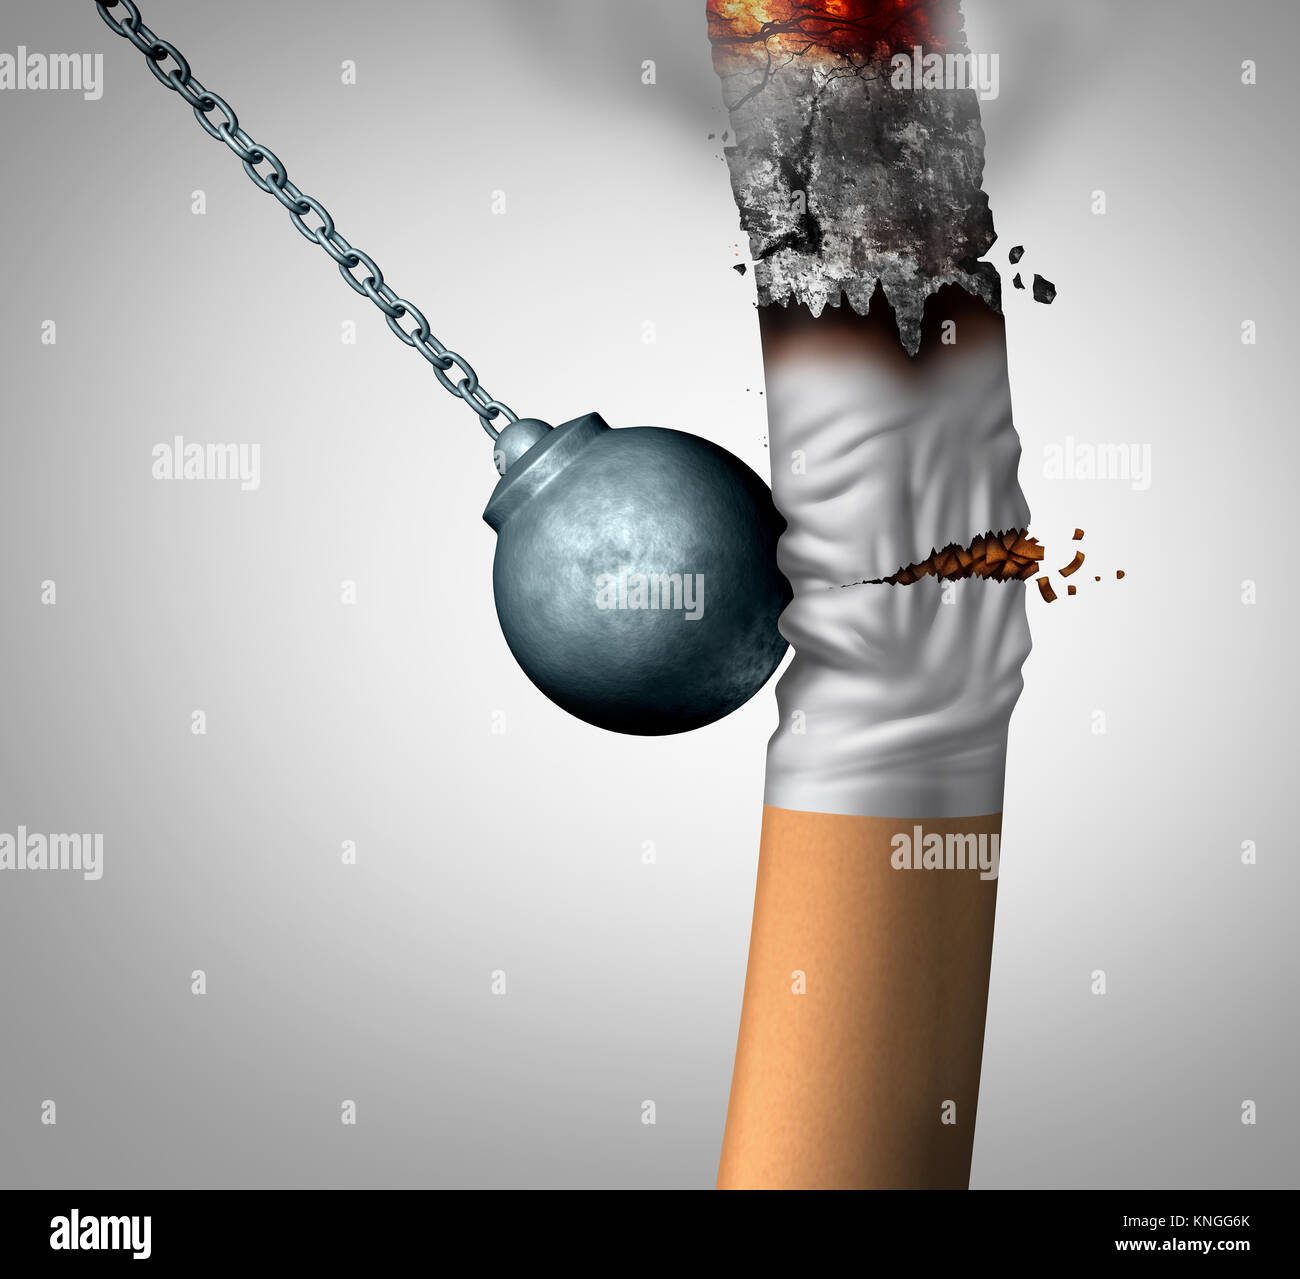 La rottura di un abitudine di fumare e uscire dagli il fumatore dipendenza come una palla di demolizione la frantumazione di una sigaretta di nicotina. Foto Stock